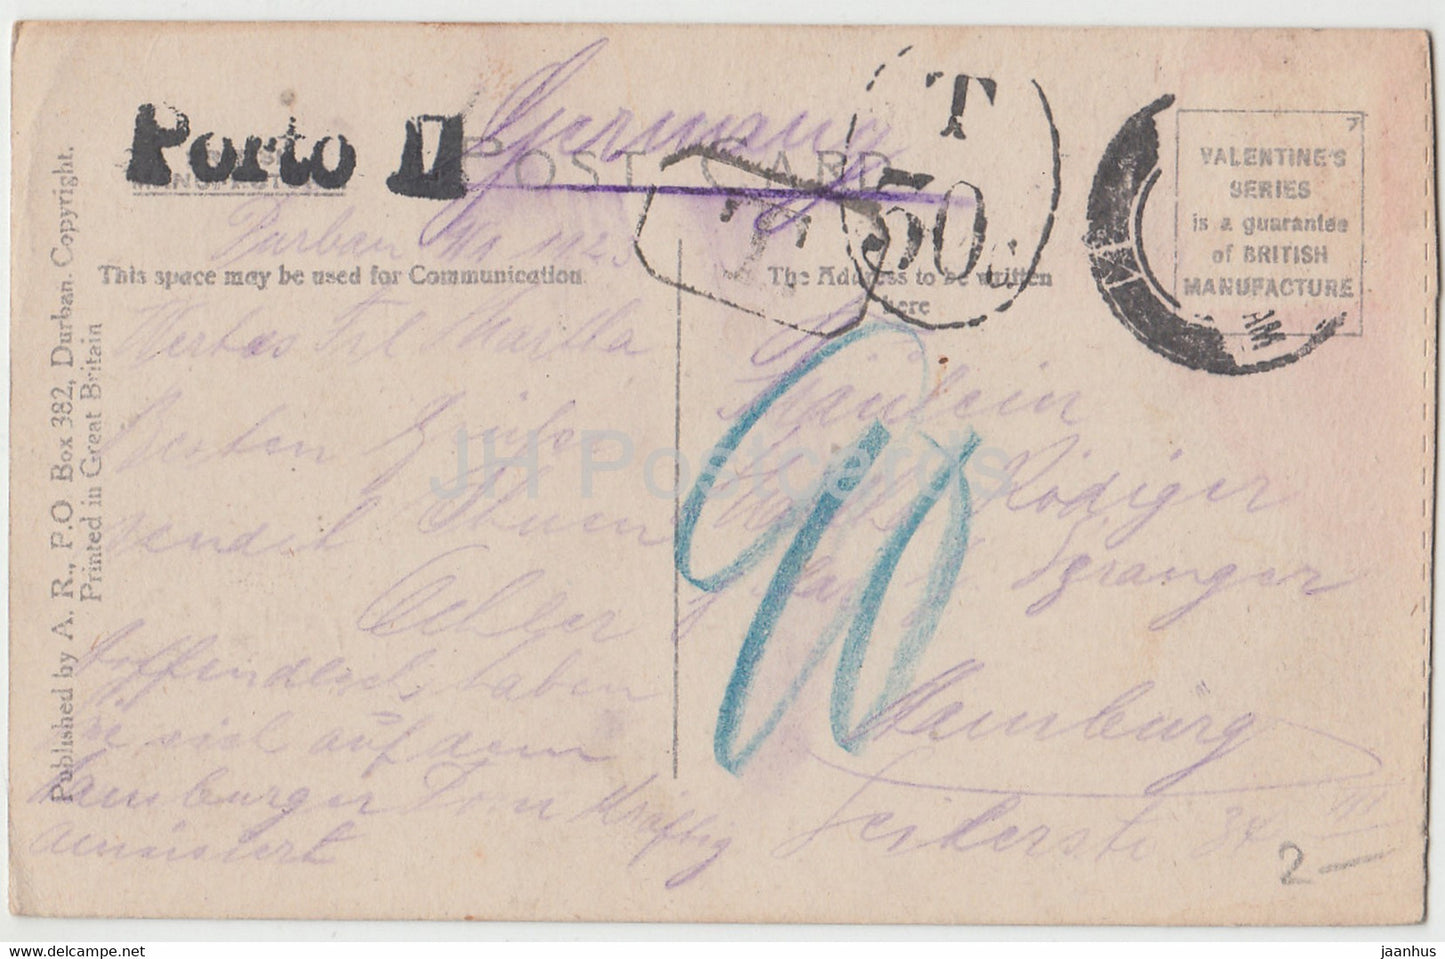 Durban - Palais de justice - Esplanade - 98554 - carte postale ancienne - 1923 - Afrique du Sud - utilisé